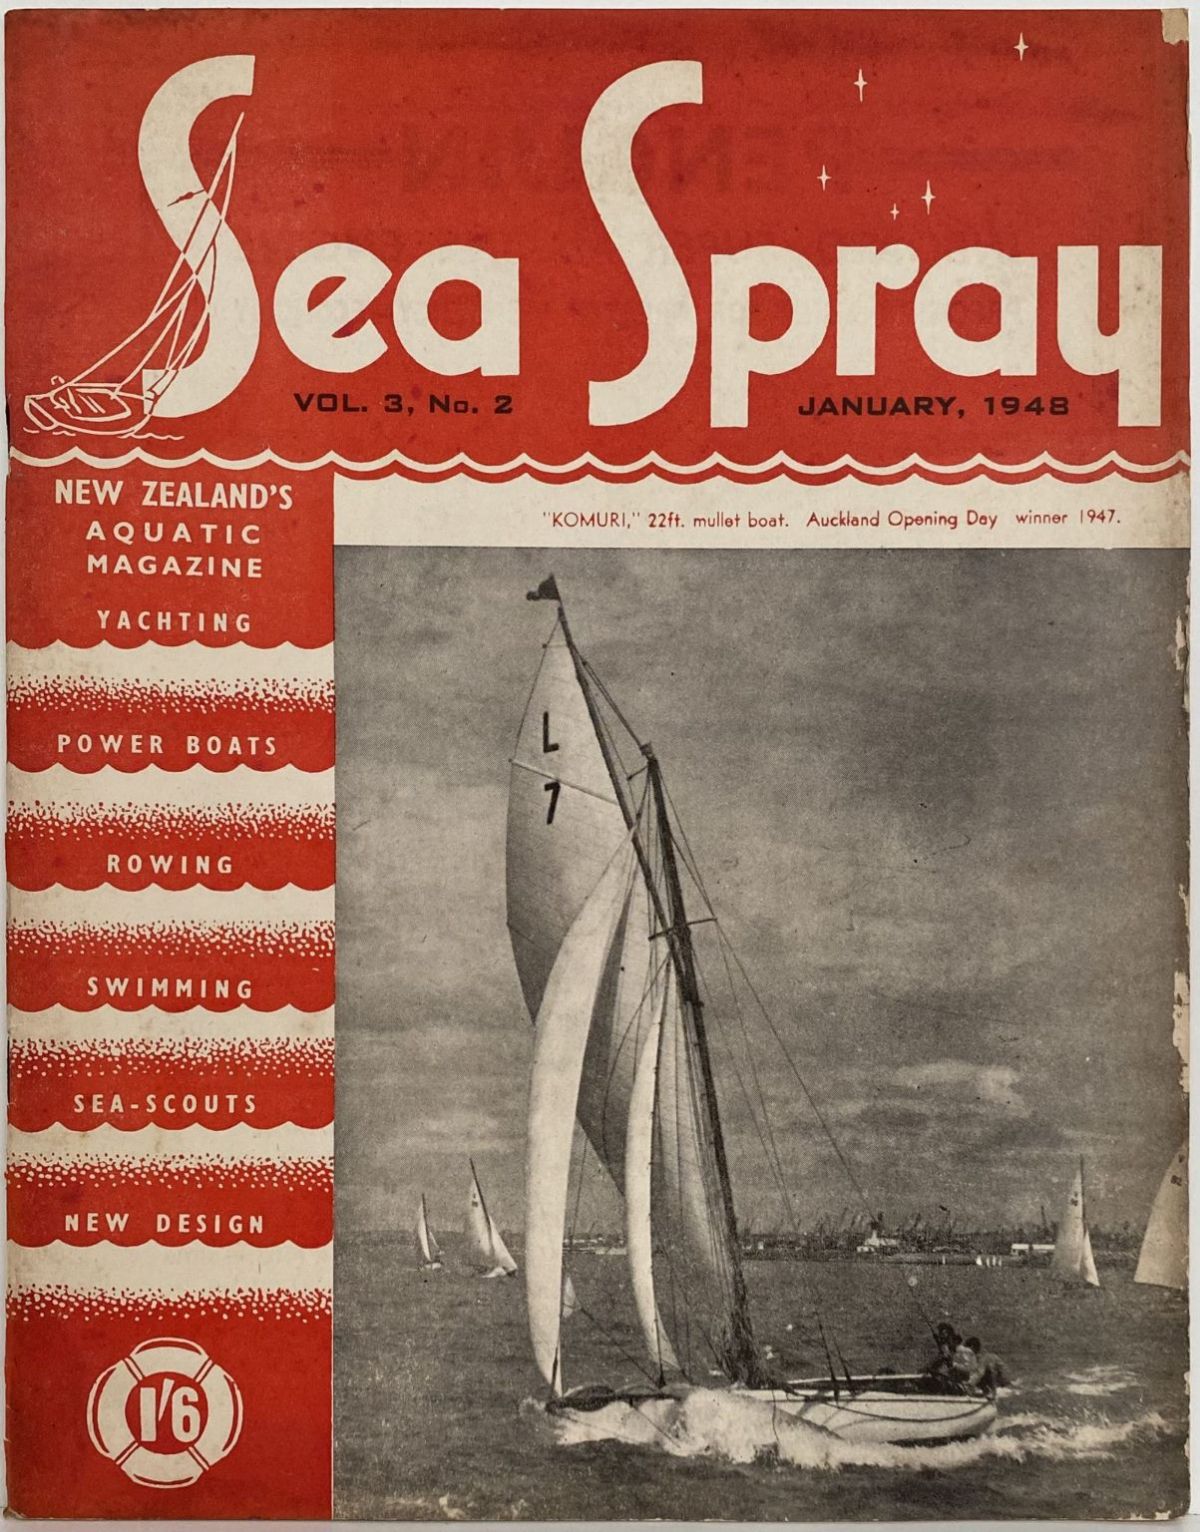 VINTAGE MAGAZINE: Sea Spray - Vol. 3, No. 2 - January 1948